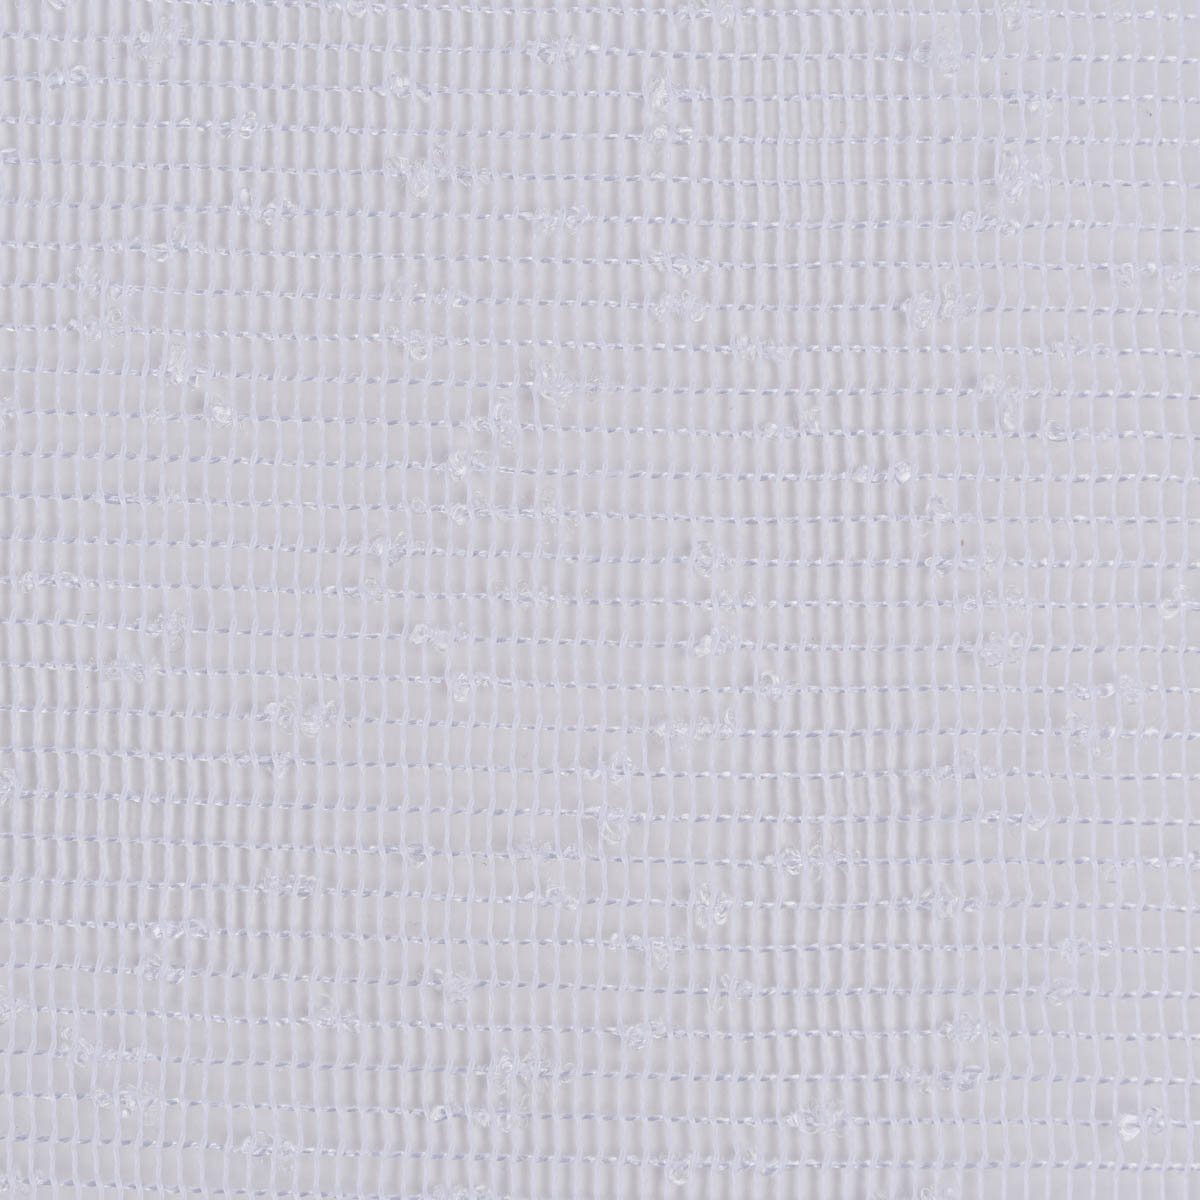 leicht Stores Meterware Polyester, Rasch Textil Gardinenstoff perforiert, Gitterstruktur überbreit Bleiband, May 280cm, weiß mit pflegeleicht,